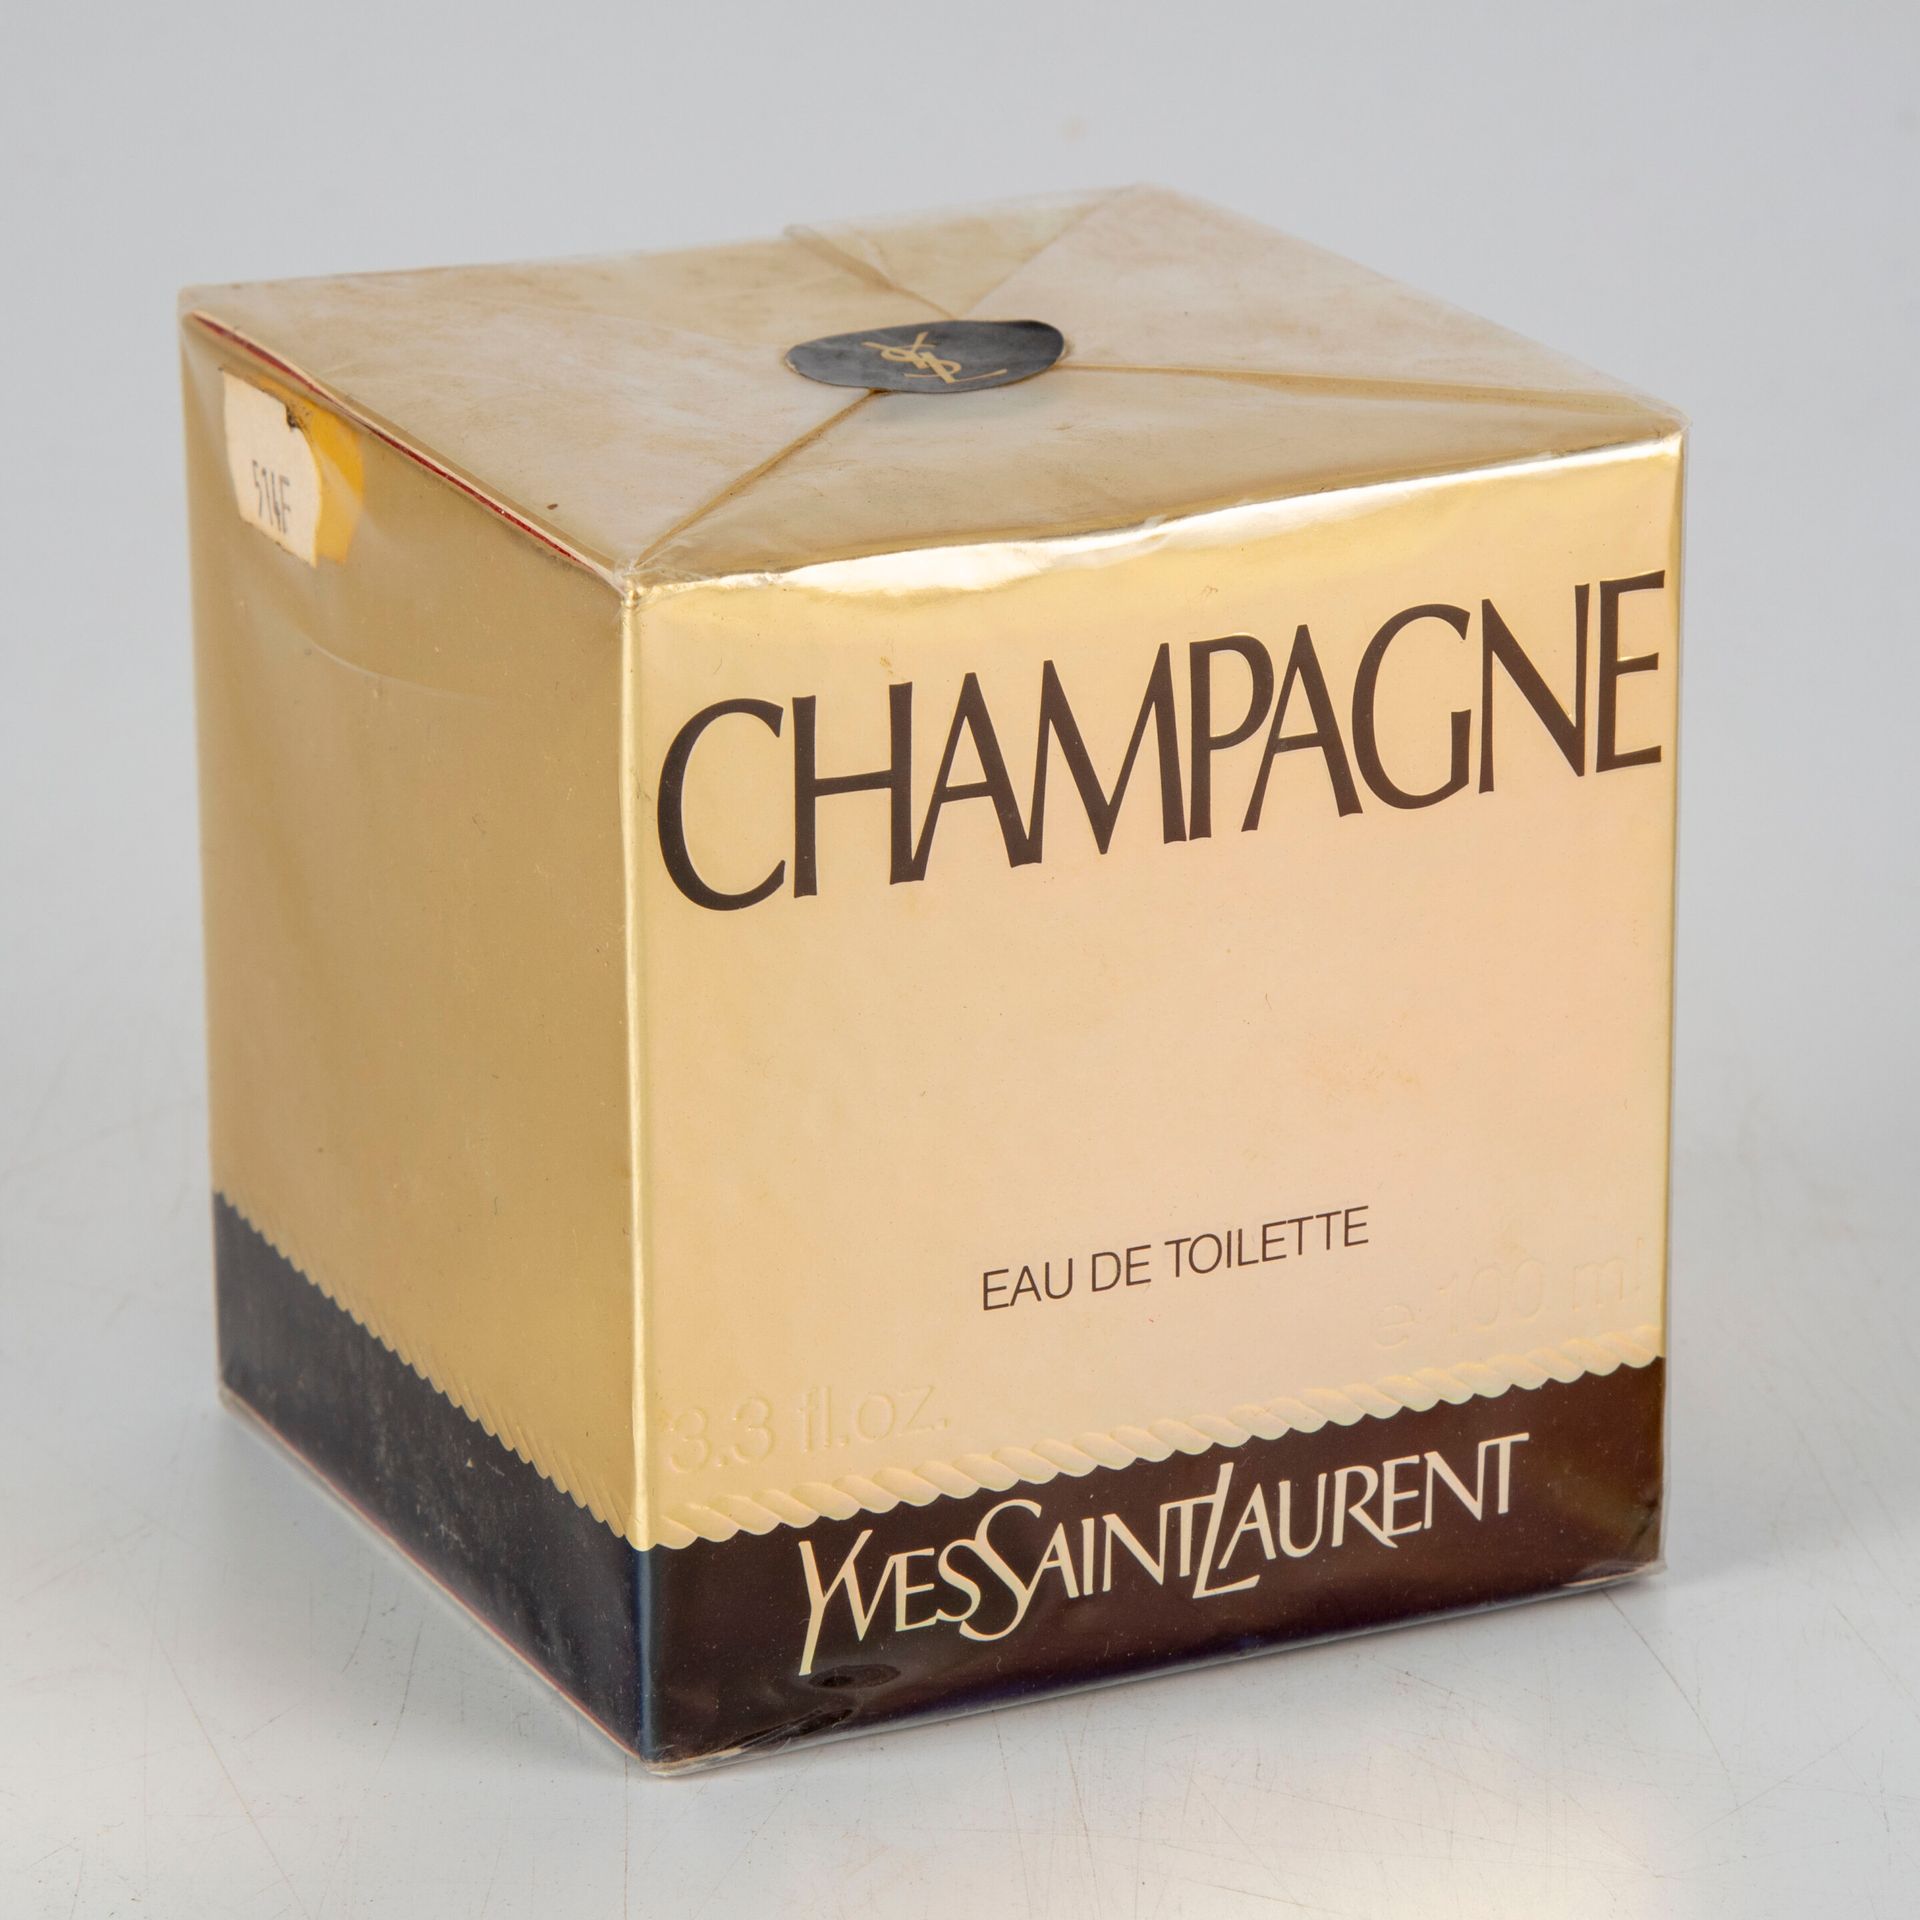 Null House of Yves Saint Laurent - Paris

Eau de toilette Champagne 100ml 

New &hellip;